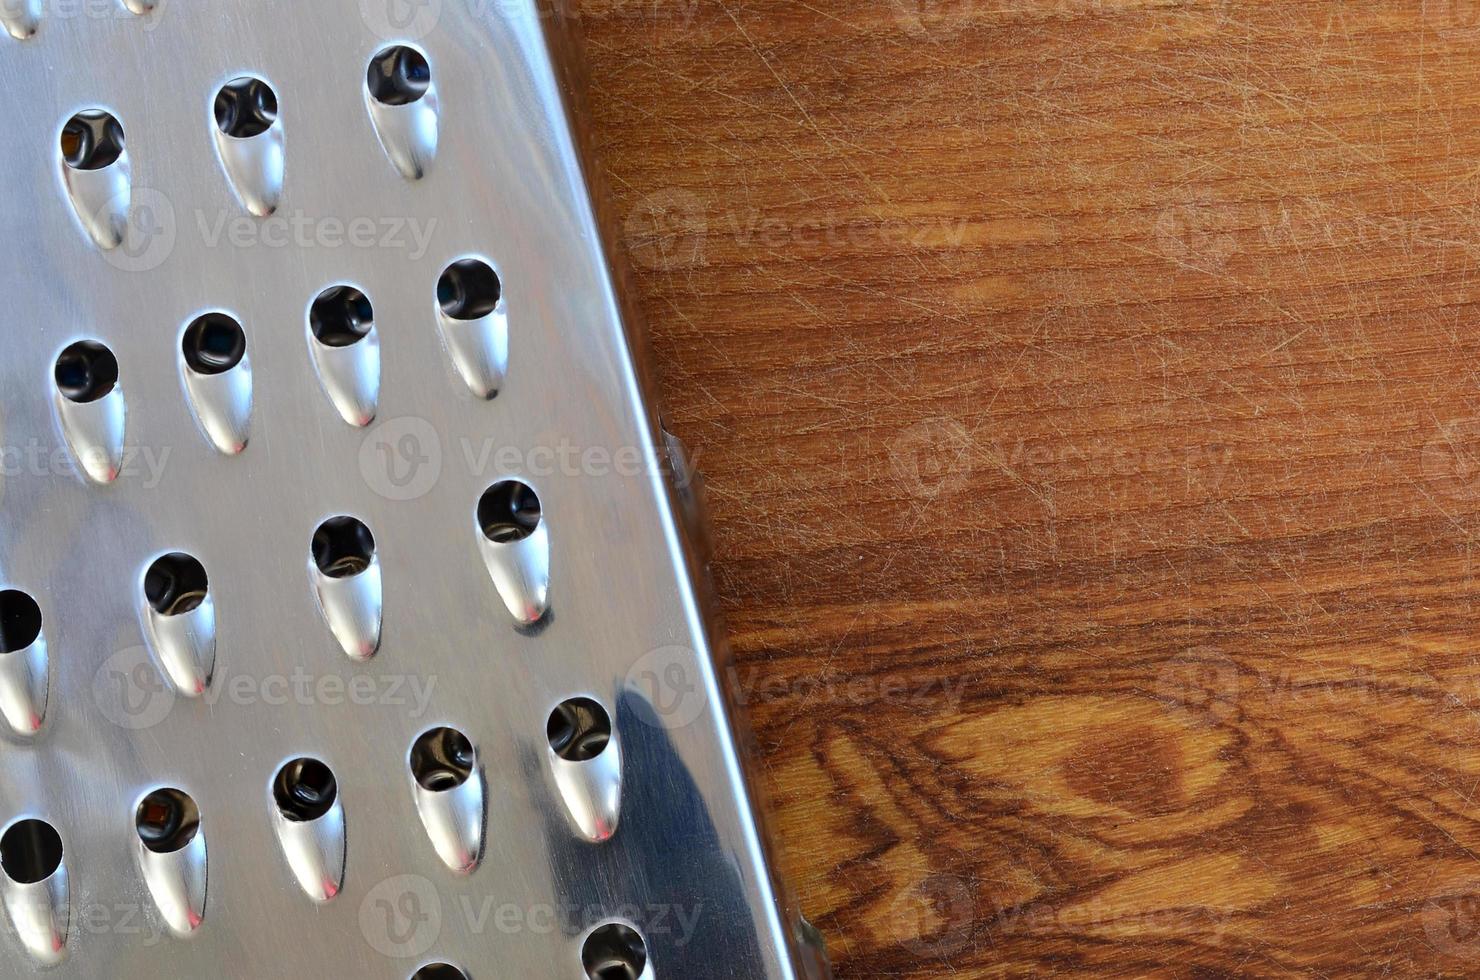 el rallador de cromo se encuentra en la tabla de cortar con muchas cicatrices del hacha y el cuchillo. imagen de fondo para recetas de cocina foto